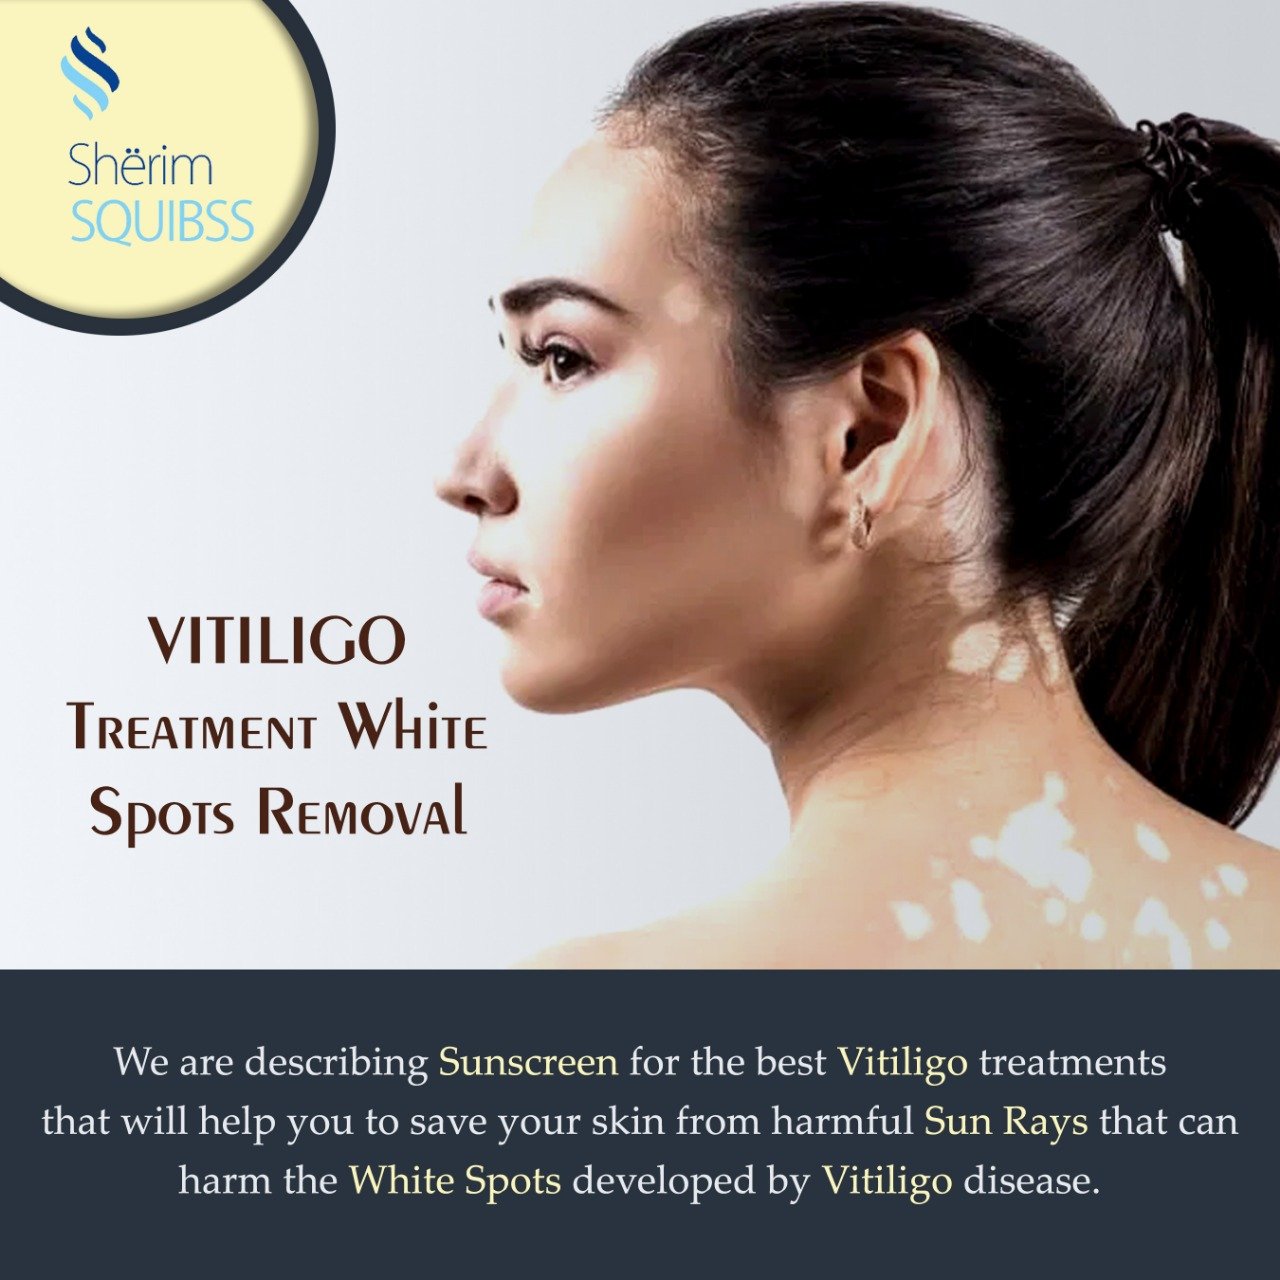 Vitiligo treatment white spots removal